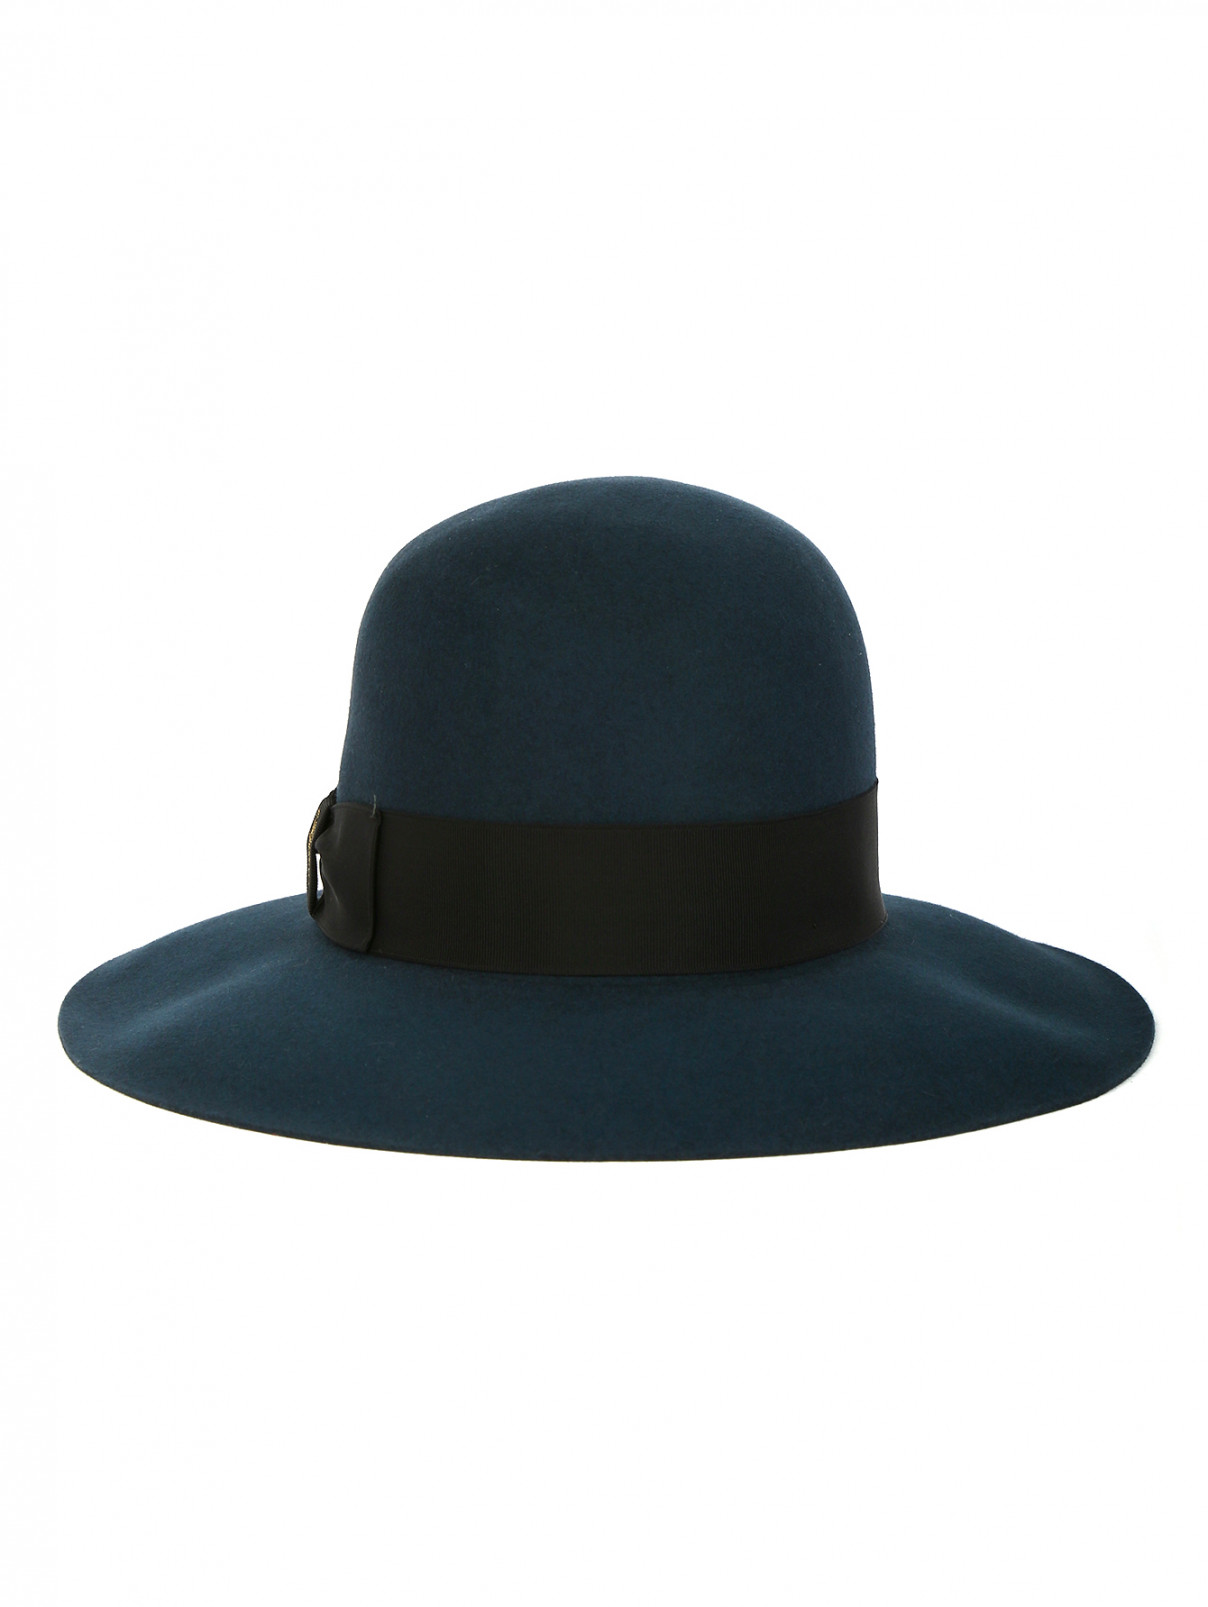 Однотонная шляпа из фетра с текстильной отделкой Borsalino  –  Обтравка1  – Цвет:  Зеленый